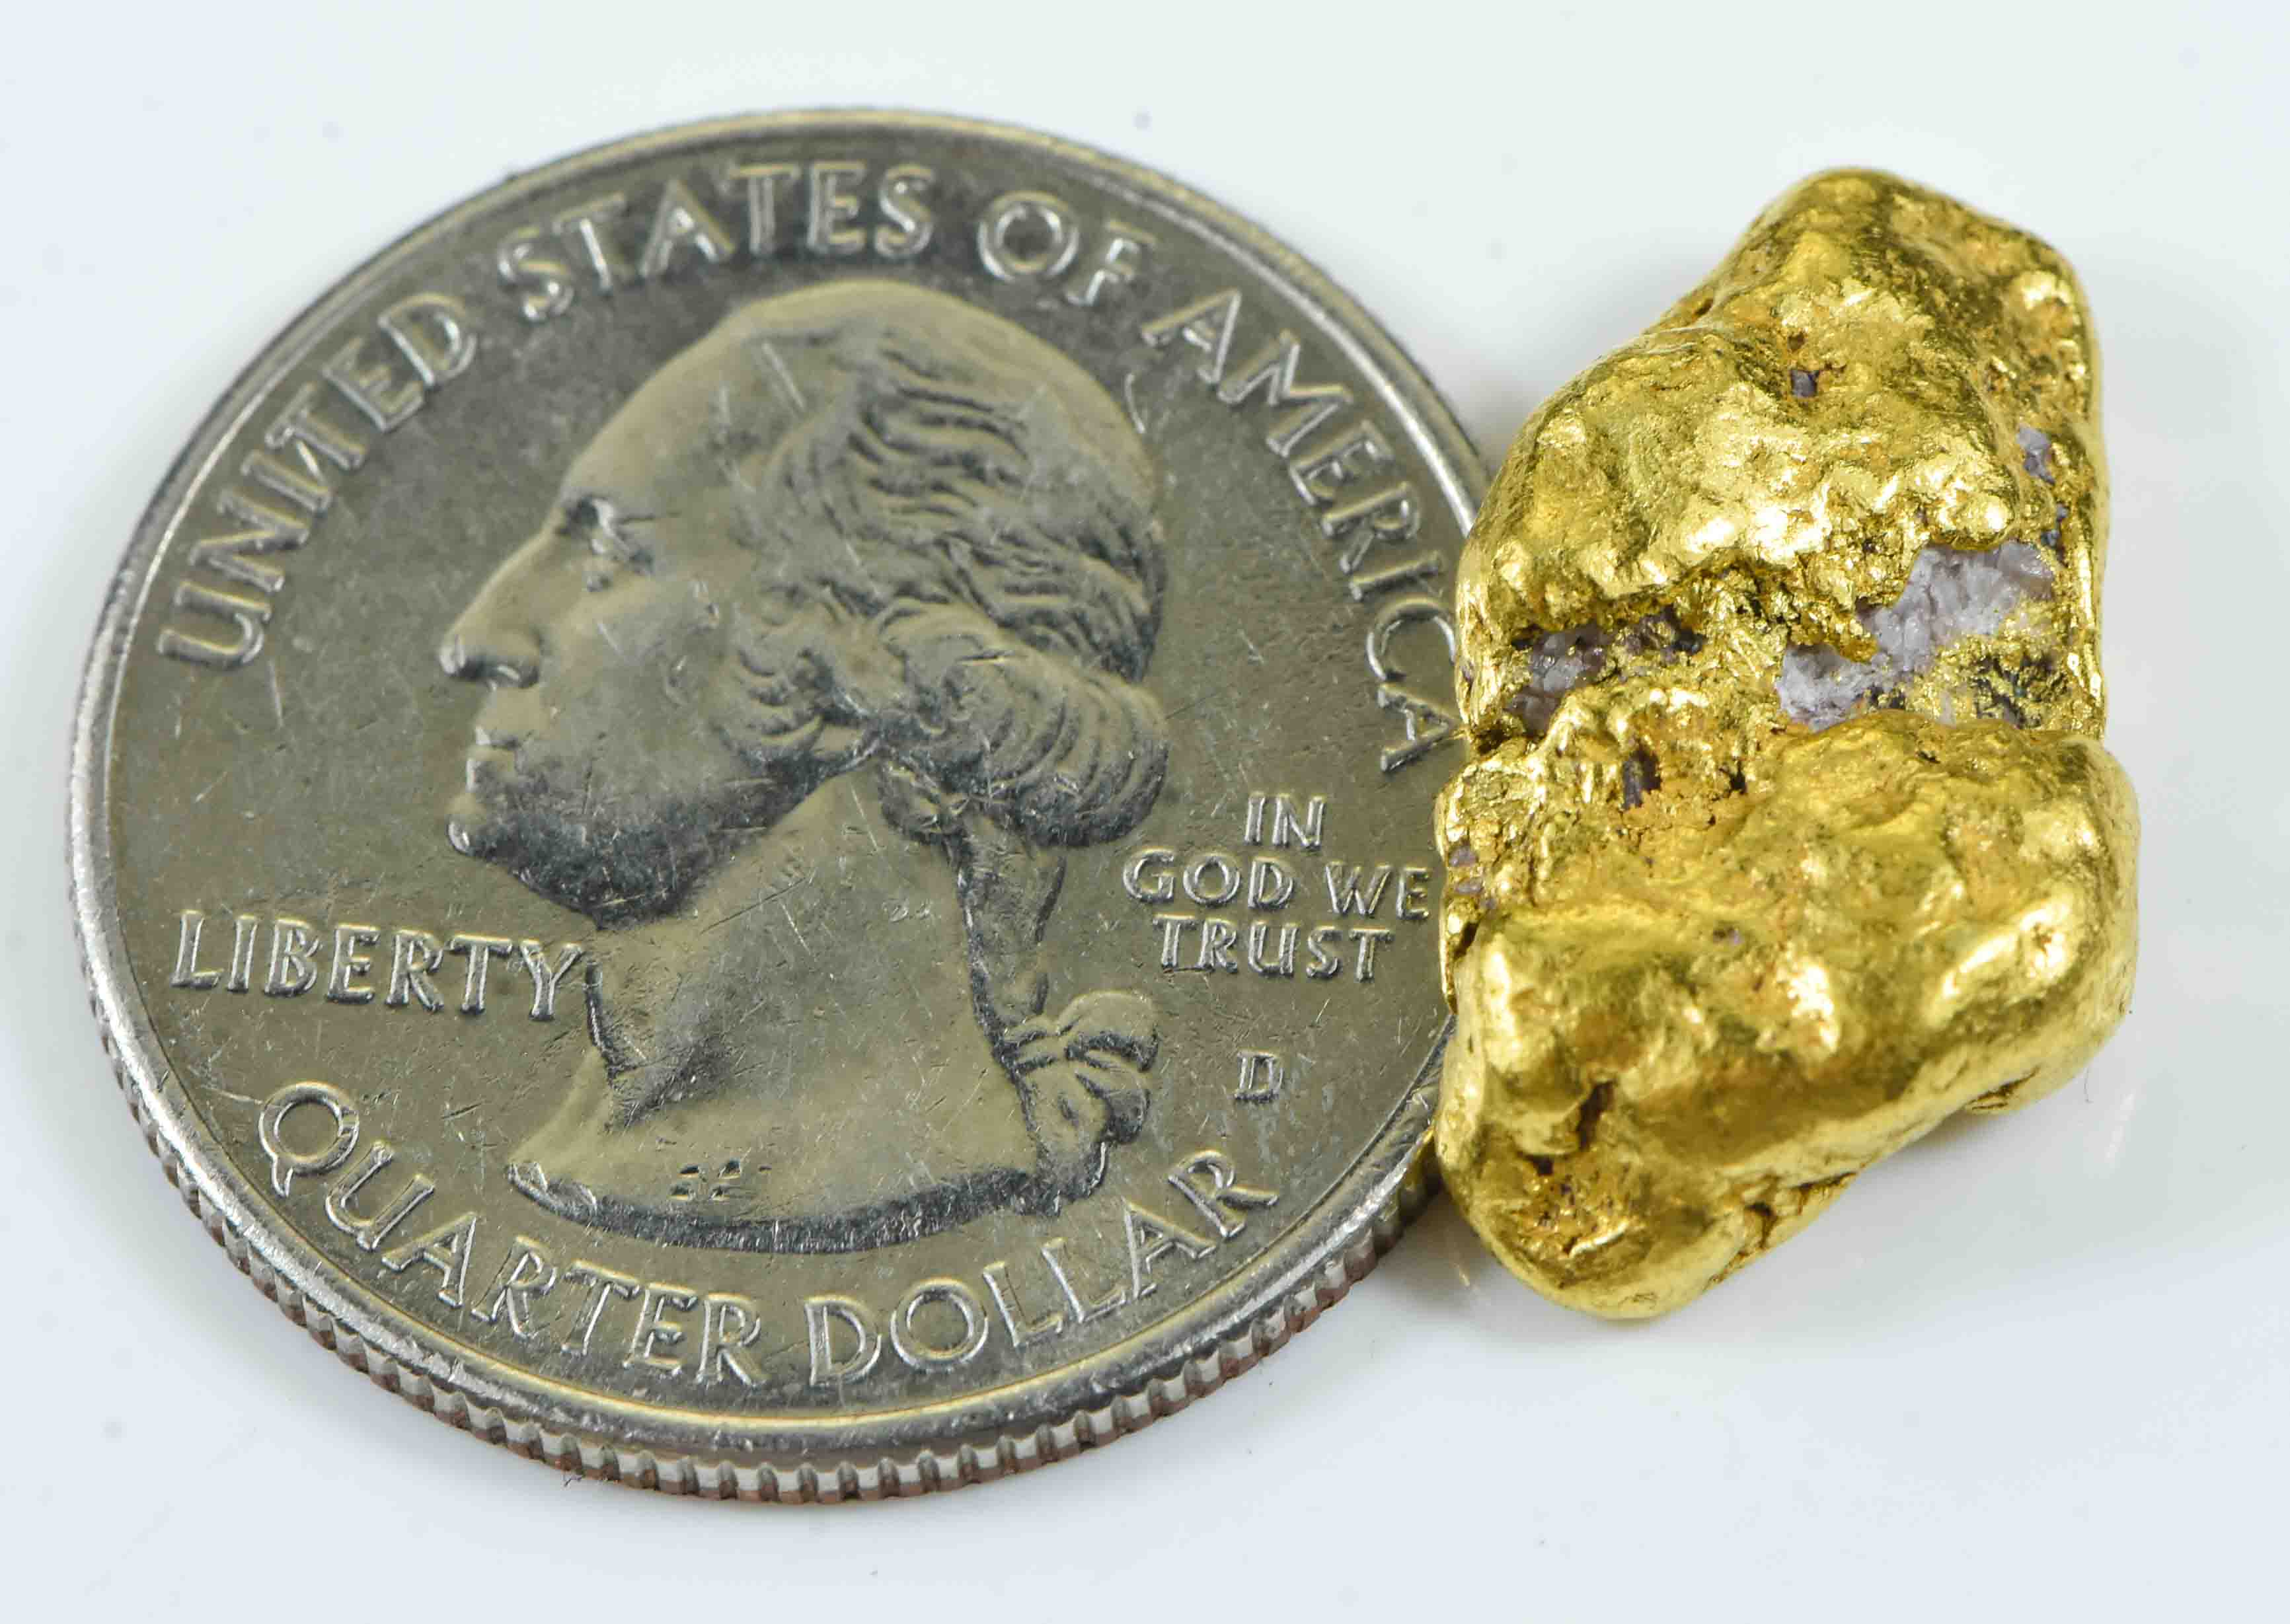 #428 Alaskan BC Natural Gold Nugget 6.47 Grams Genuine